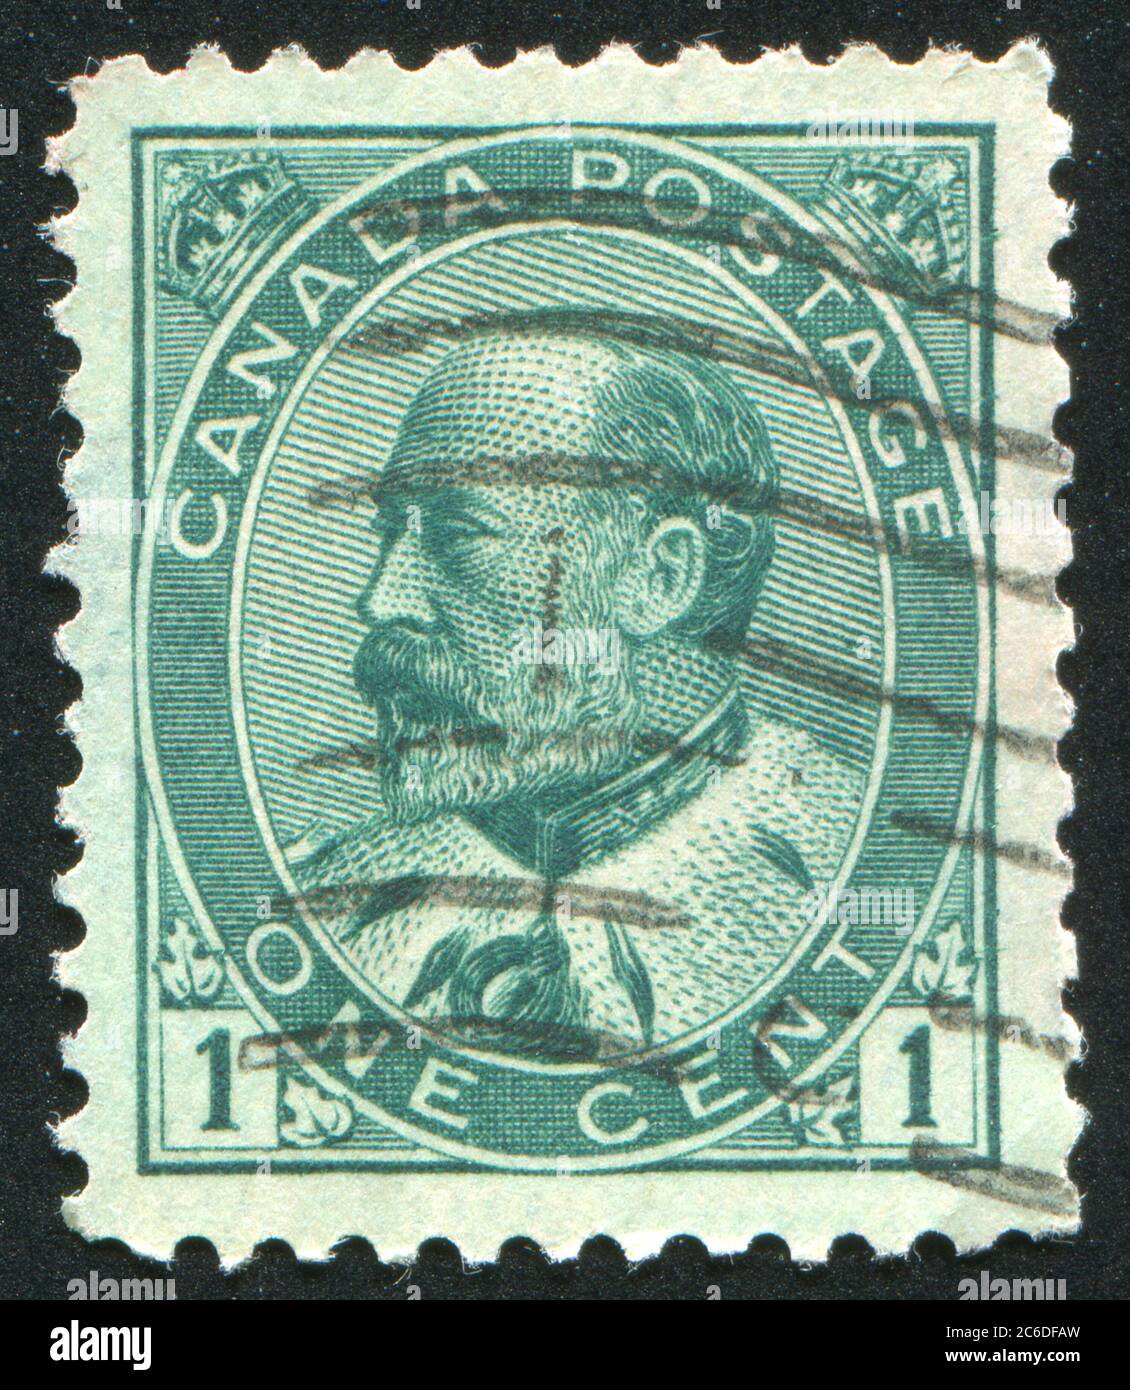 CANADA - VERS 1905 : timbre imprimé par le Canada, montre le roi Edward VII, vers 1905 Banque D'Images